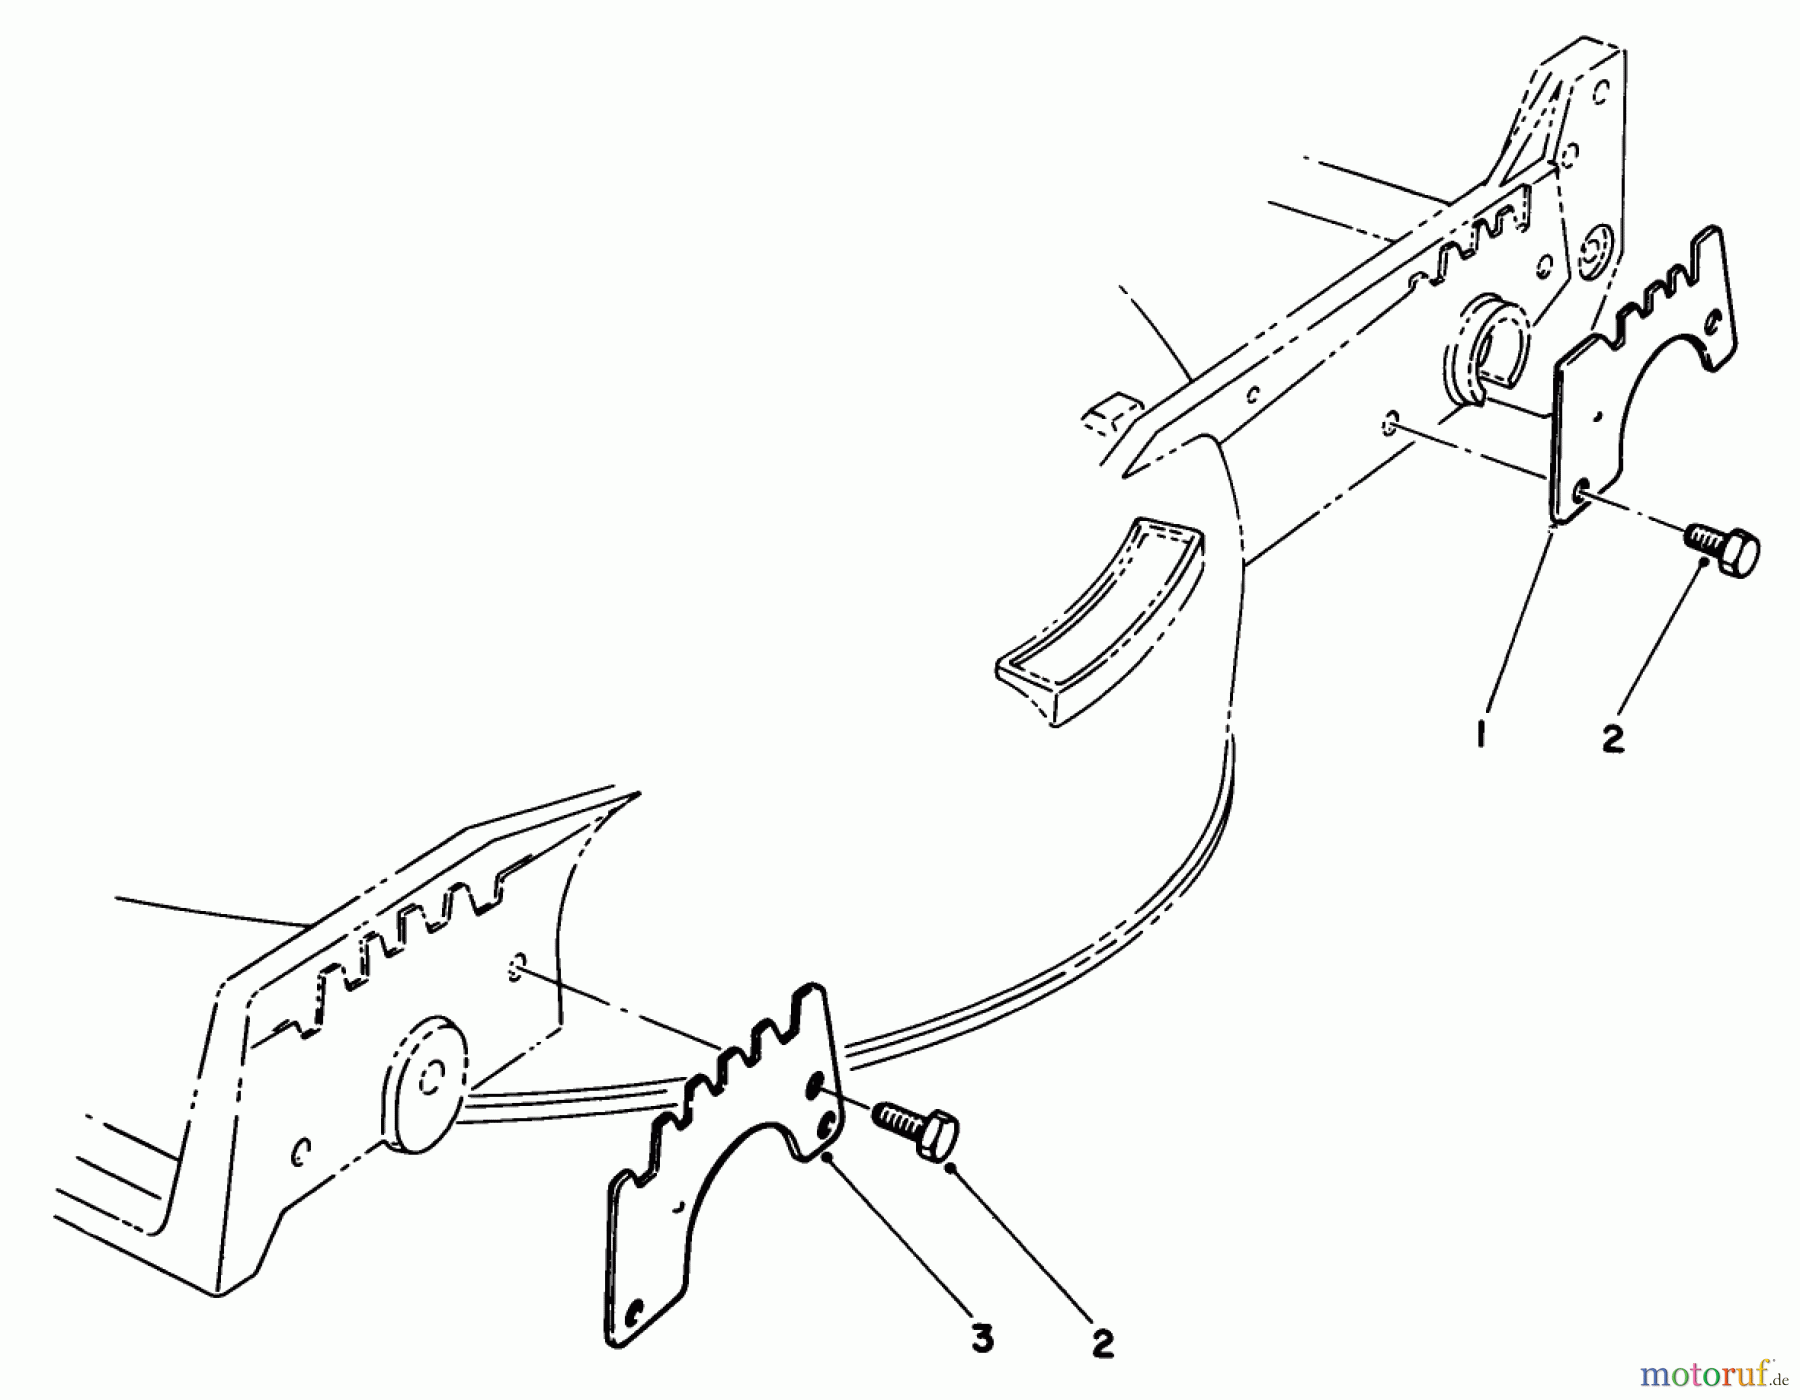  Toro Neu Mowers, Walk-Behind Seite 1 20684 - Toro Lawnmower, 1985 (5000001-5999999) WEAR PLATE KIT NO. 49-4080 (OPTIONAL)